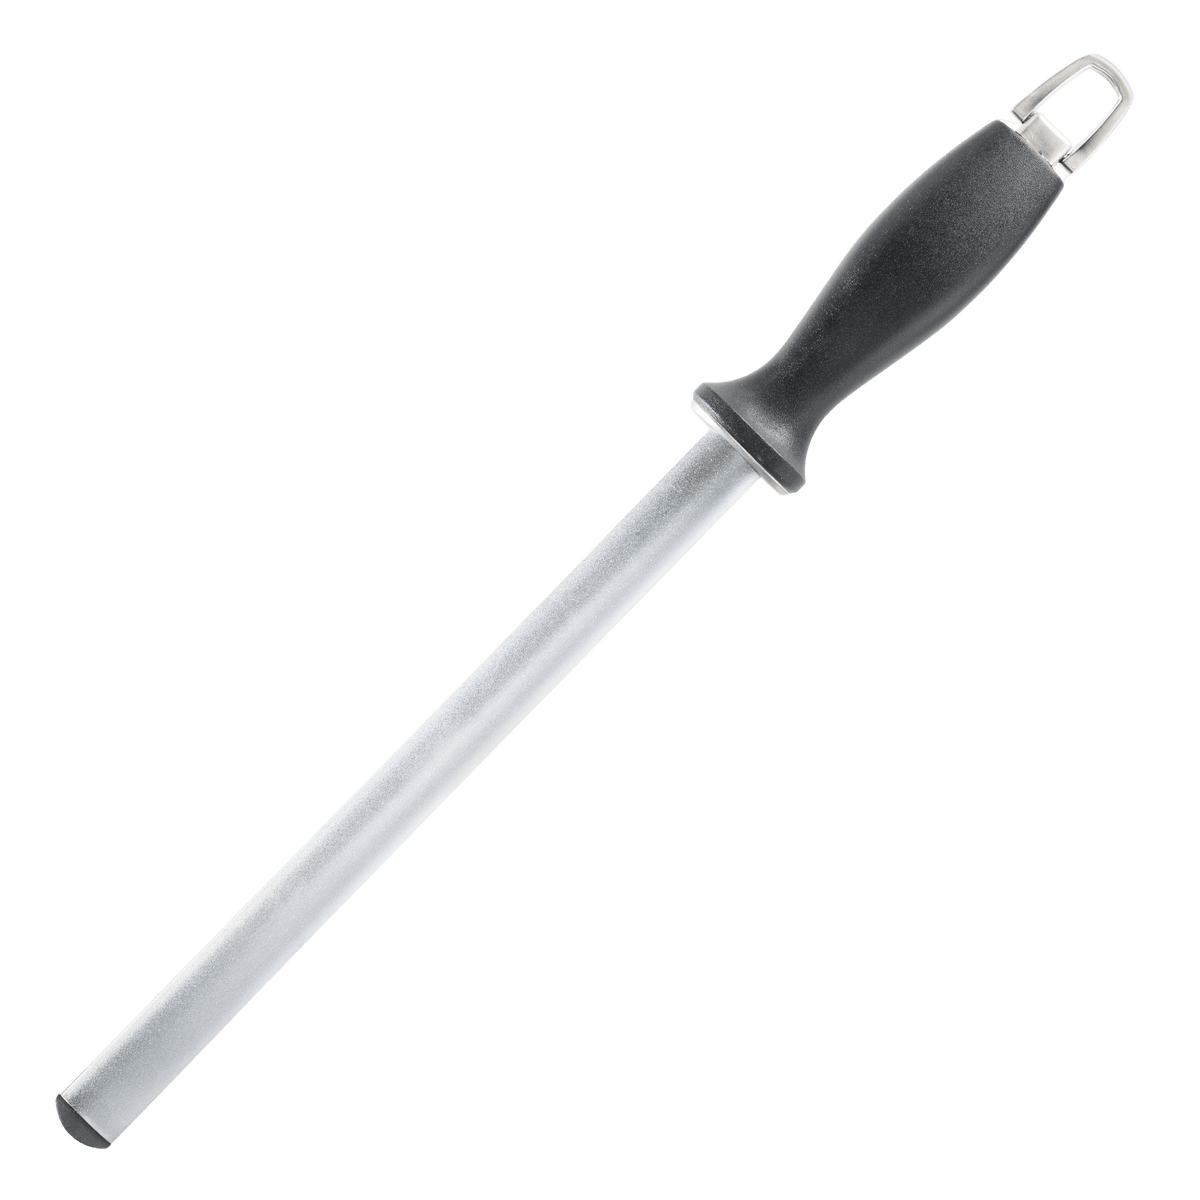 Restaurantware 7.8 x 2 inch Knife Sharpener, 1 Heavy-Duty Knife Sharpening Tool - Manual Tabletop Design, Diamond Edge, Black Stainless Steel